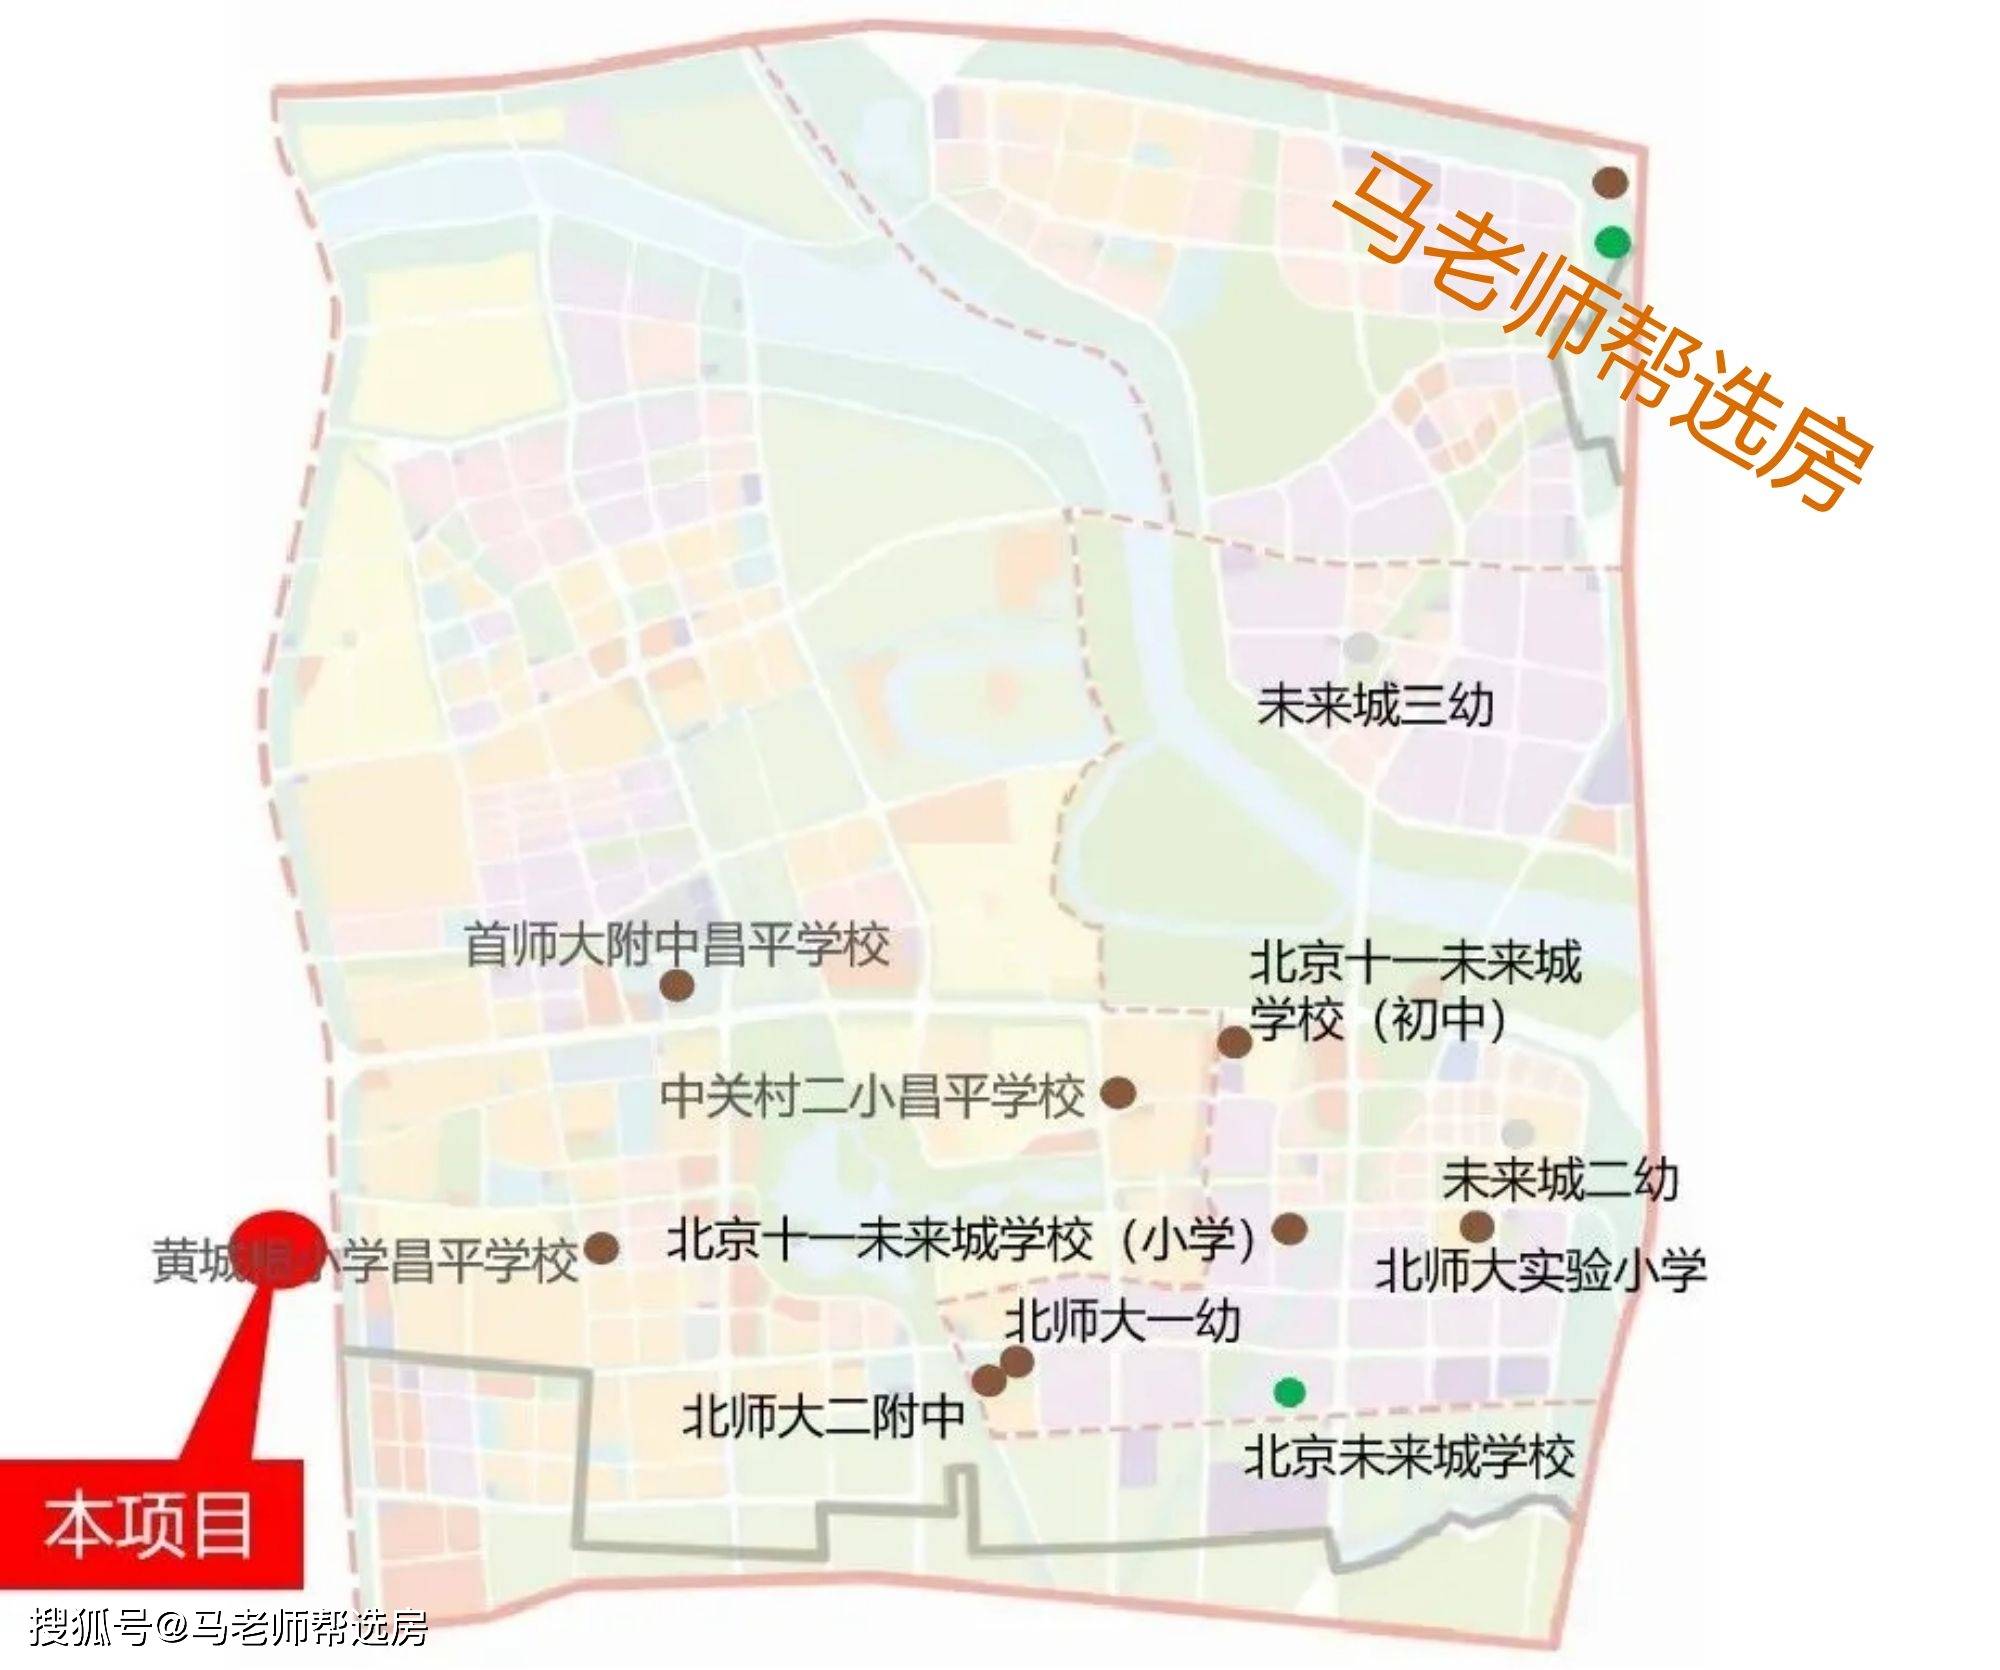 北京十一未来城学校(小学), 中关村第二小学昌平学校